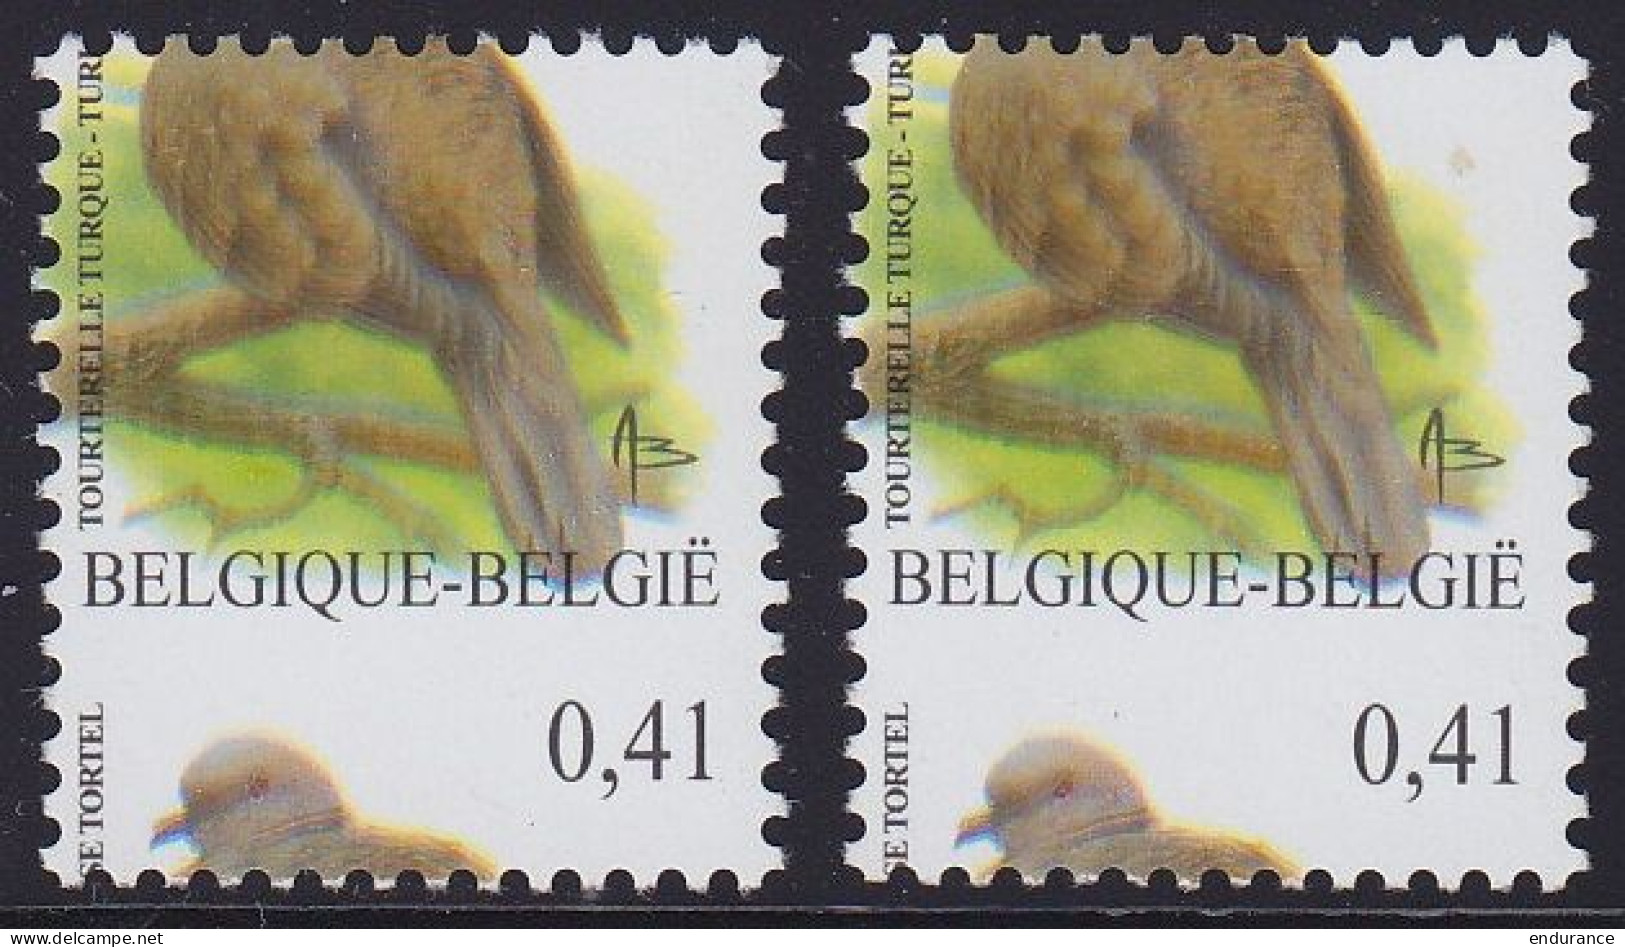 N°3135 ** Oiseau De Buzin 0,41€ Tourterelle Turque - 2x Curiosités : Double Impression, Curiosités De Couleur Et Piquage - 1985-.. Pájaros (Buzin)